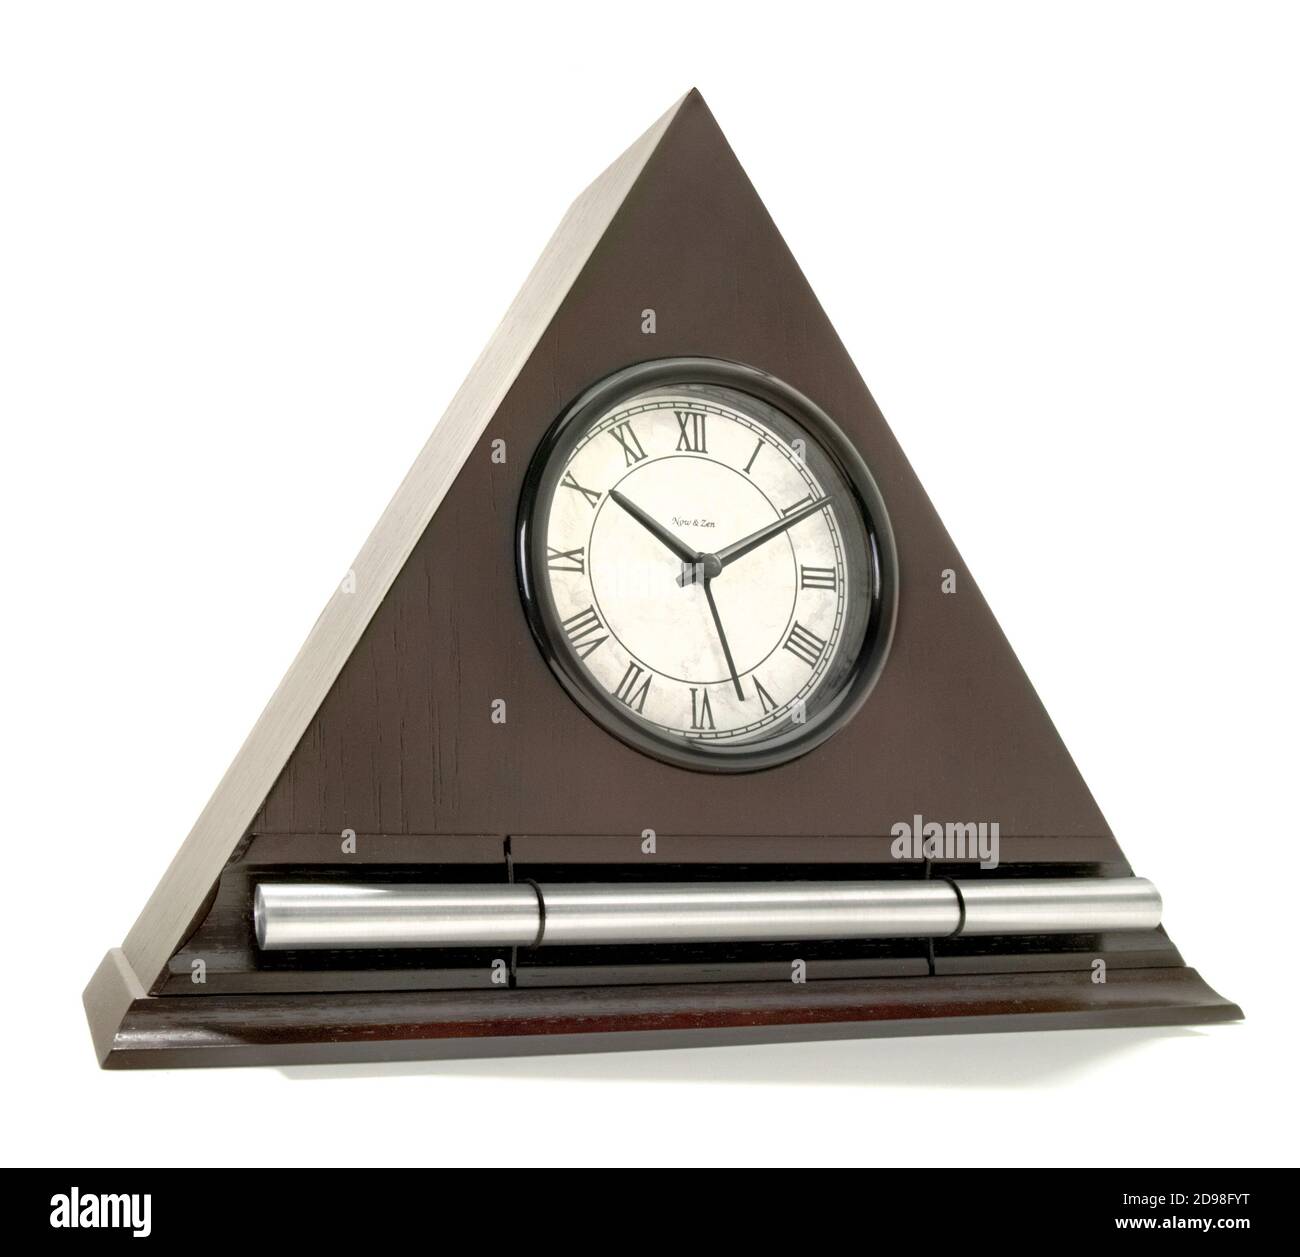 Réveil Zen analogique en forme de triangle photographié sur fond blanc  Photo Stock - Alamy